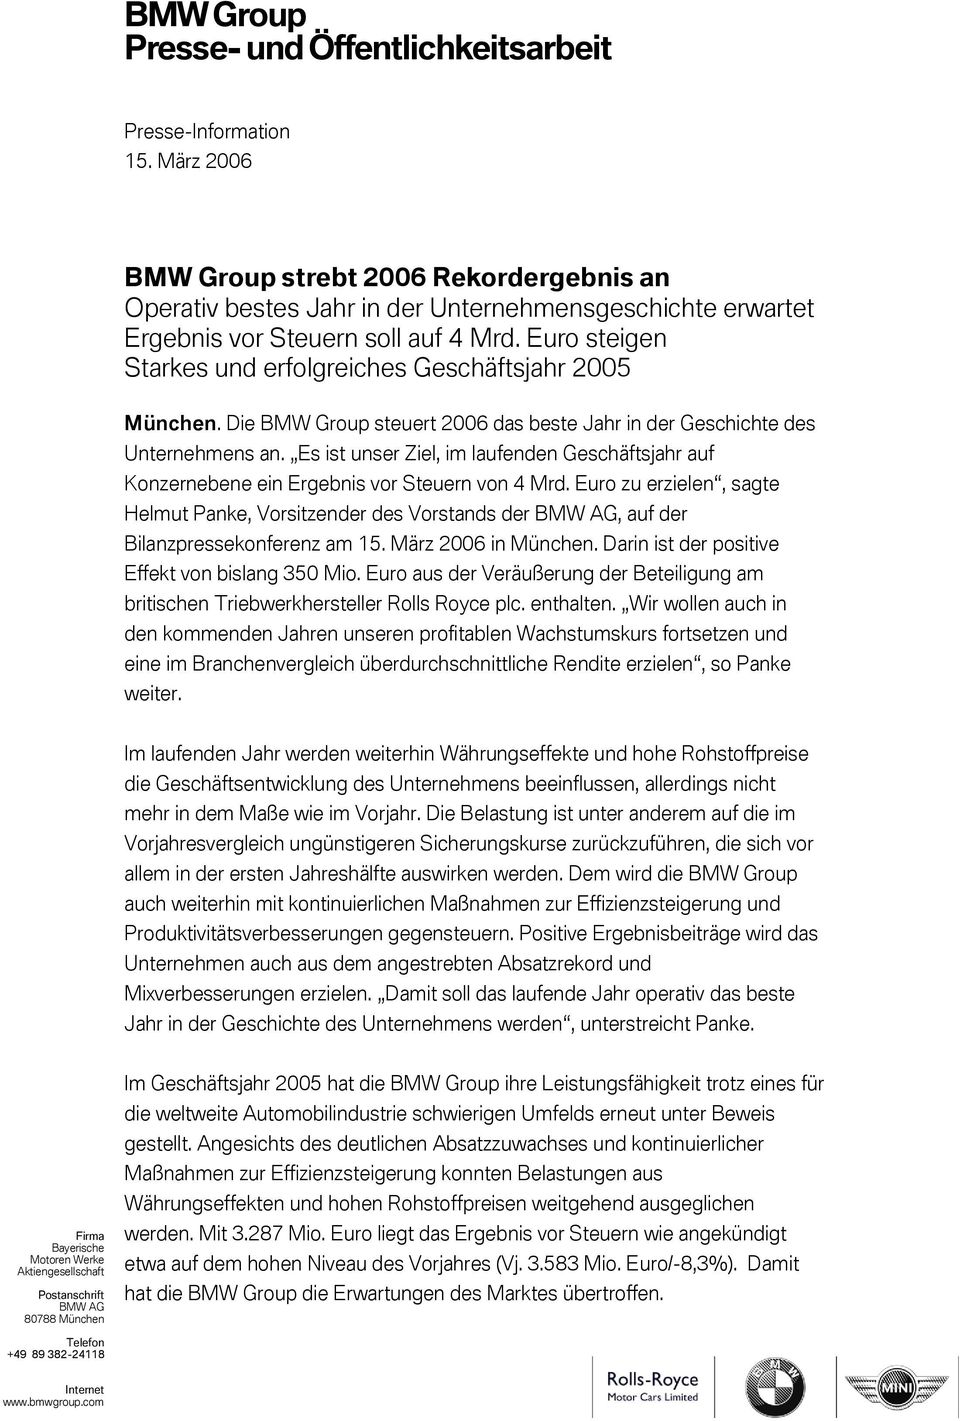 Euro zu erzielen, sagte Helmut Panke, Vorsitzender des Vorstands der BMW AG, auf der Bilanzpressekonferenz am 15. März 2006 in München. Darin ist der positive Effekt von bislang 350 Mio.